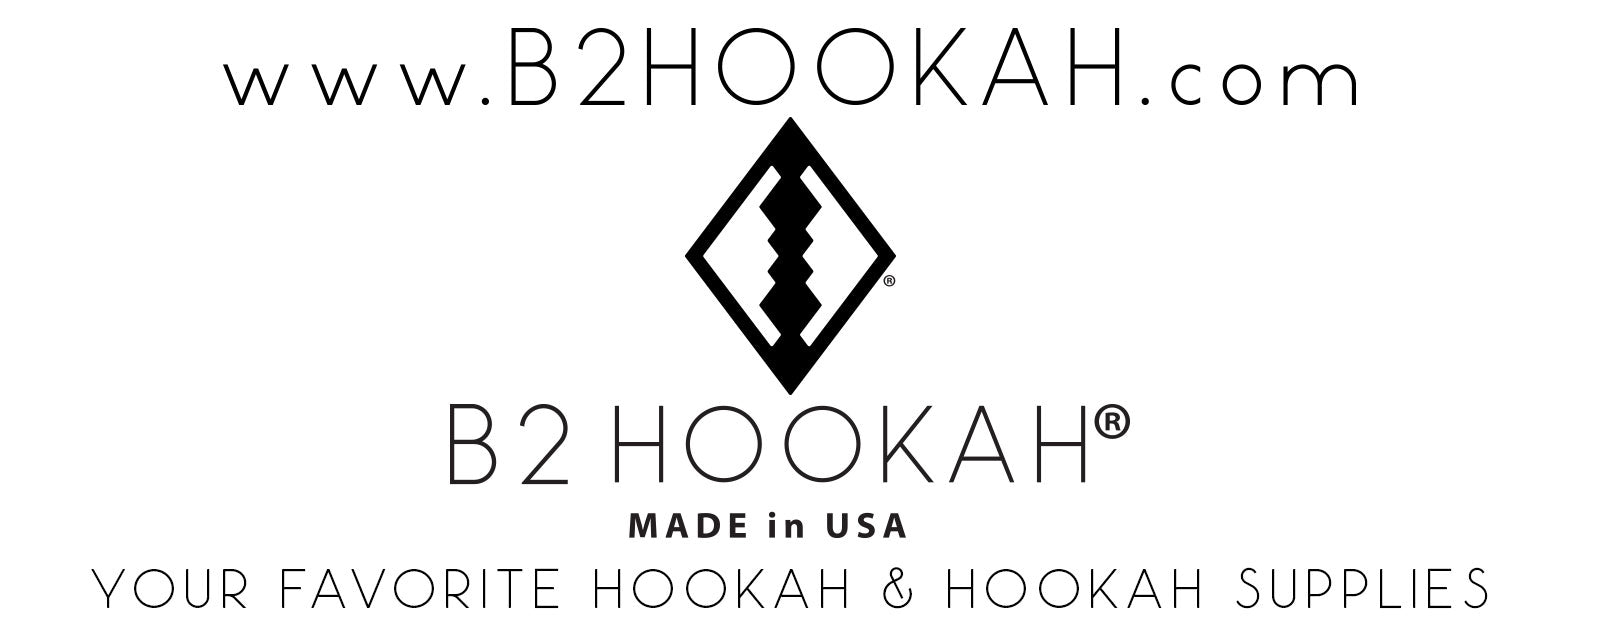 B2 Hookah